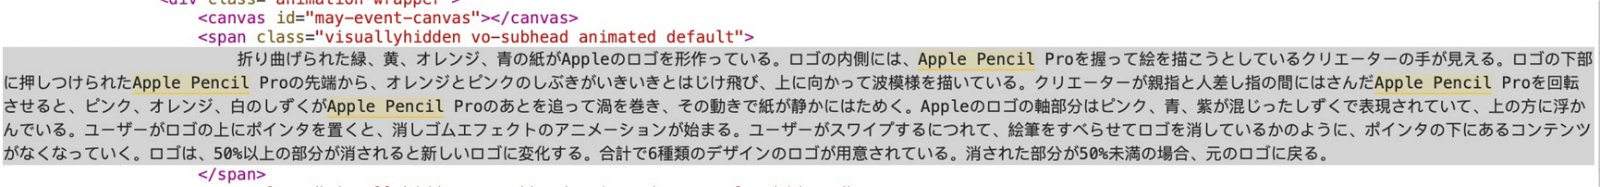 Código hallado en la pagina web de Apple en Japón